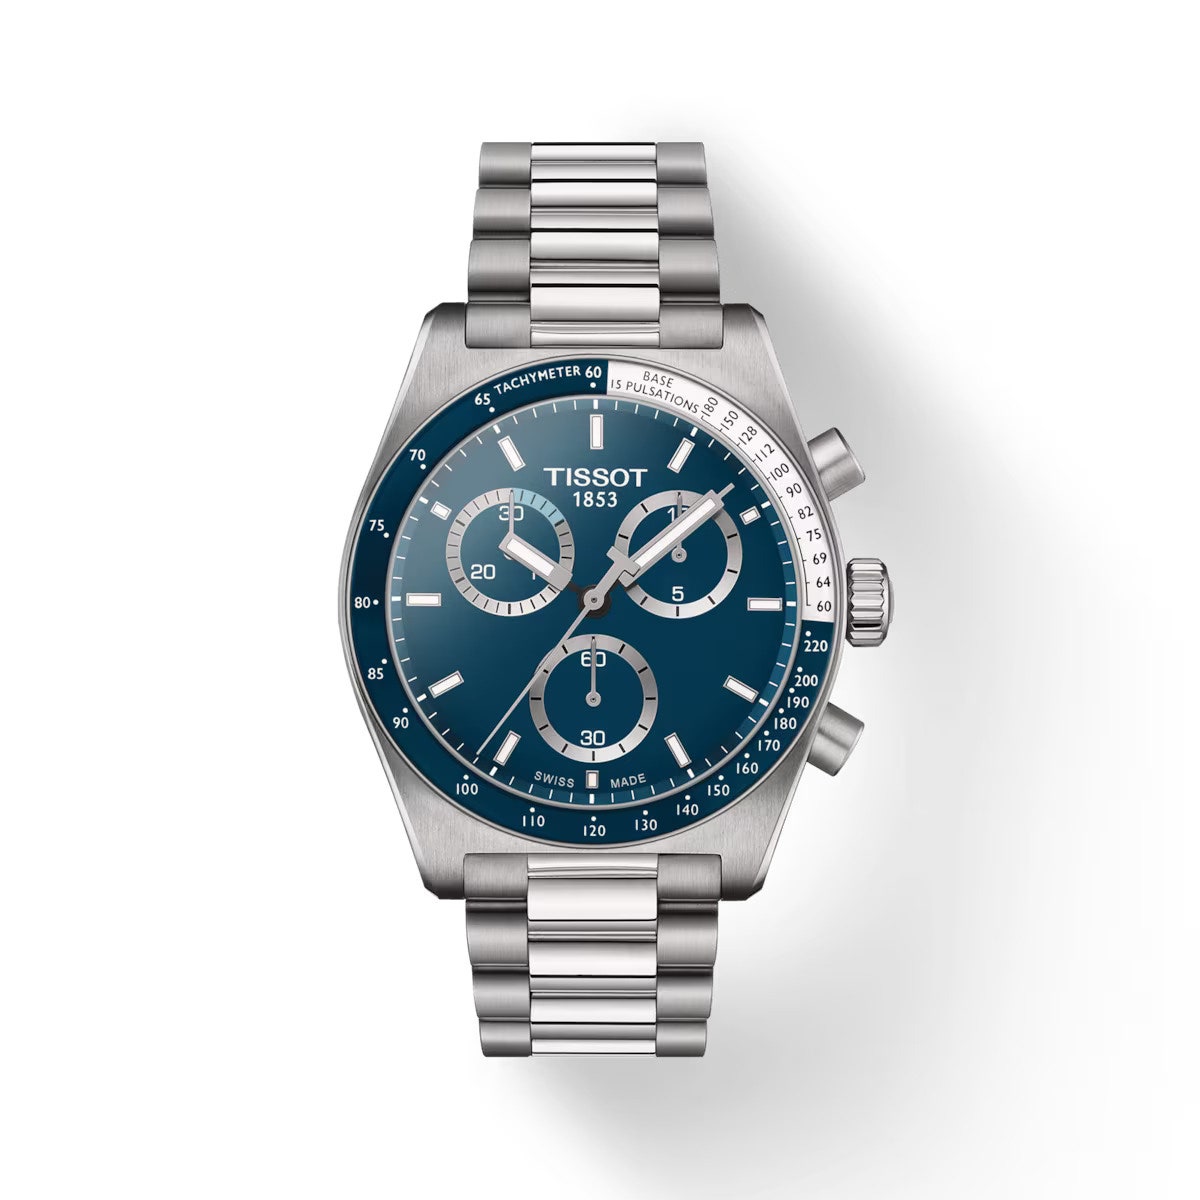 Reloj Tissot PR516 azul.